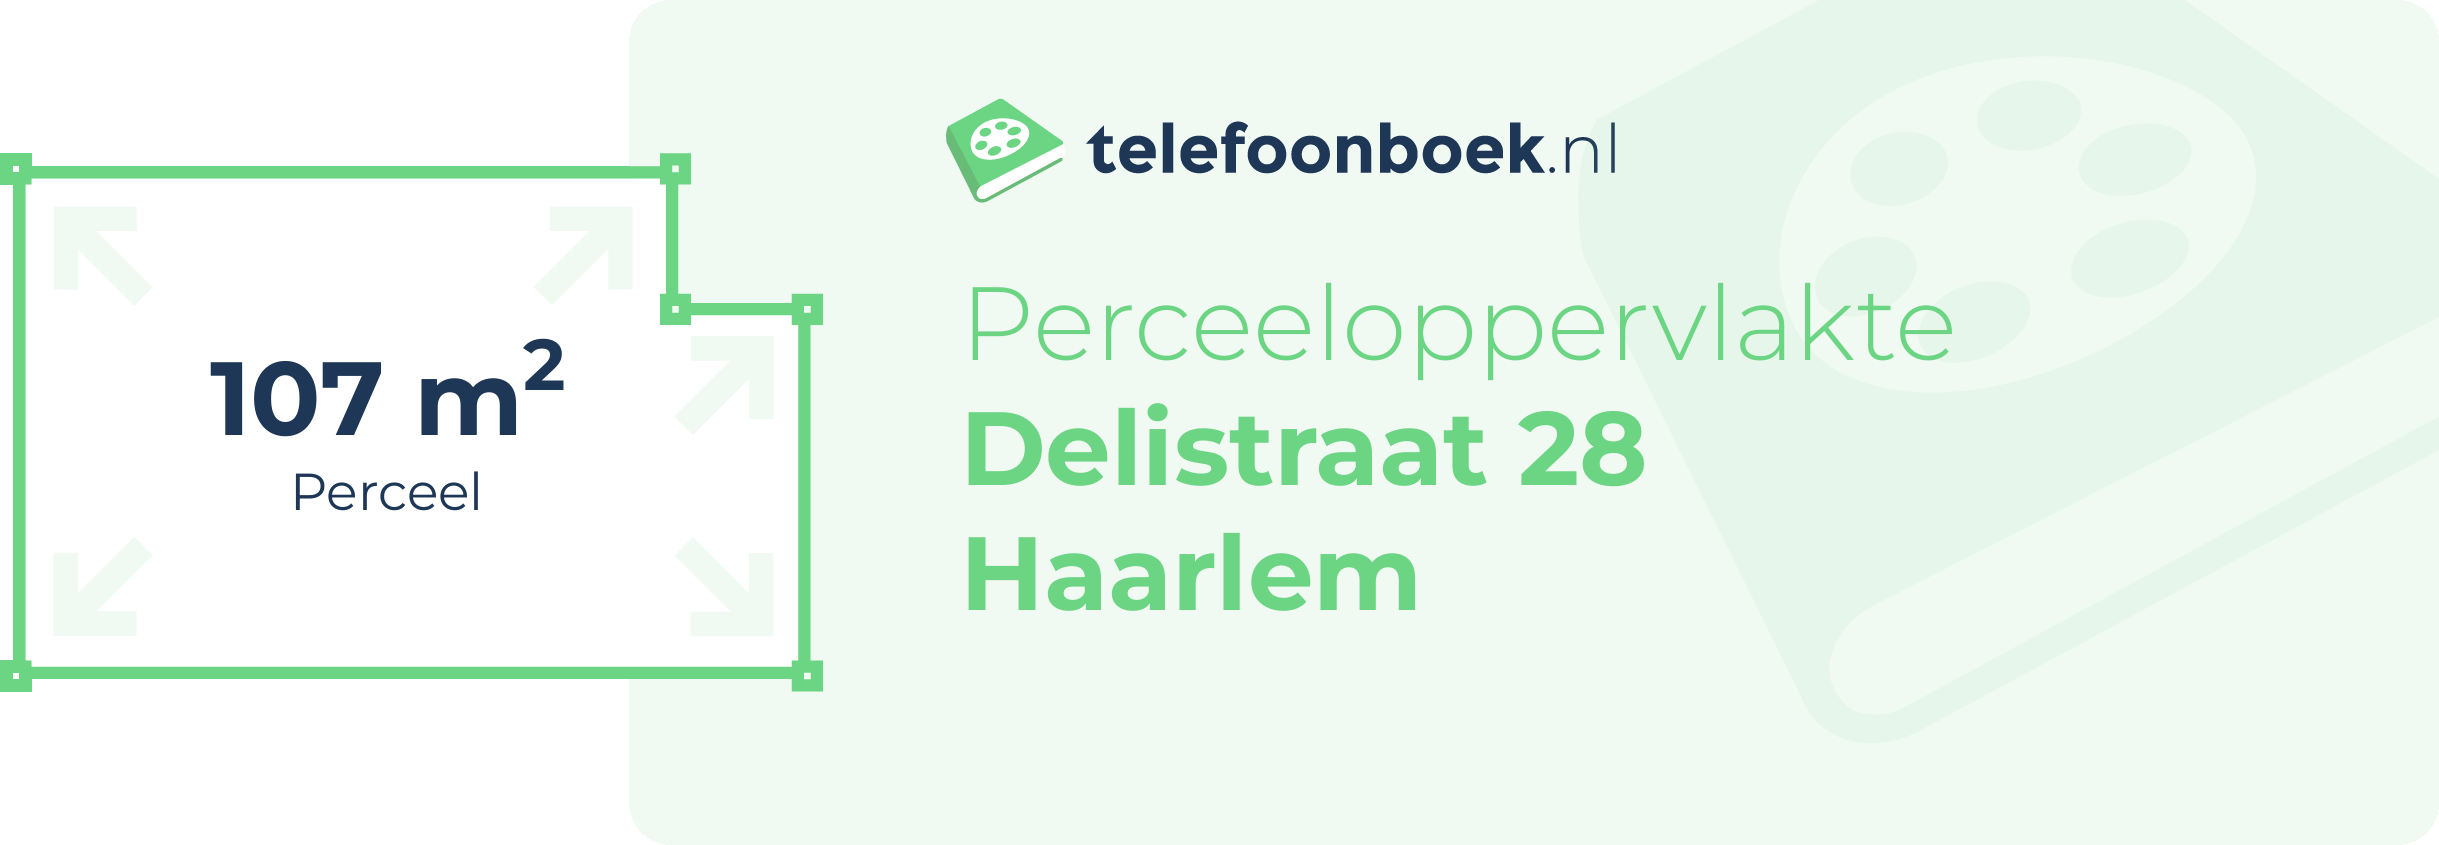 Perceeloppervlakte Delistraat 28 Haarlem